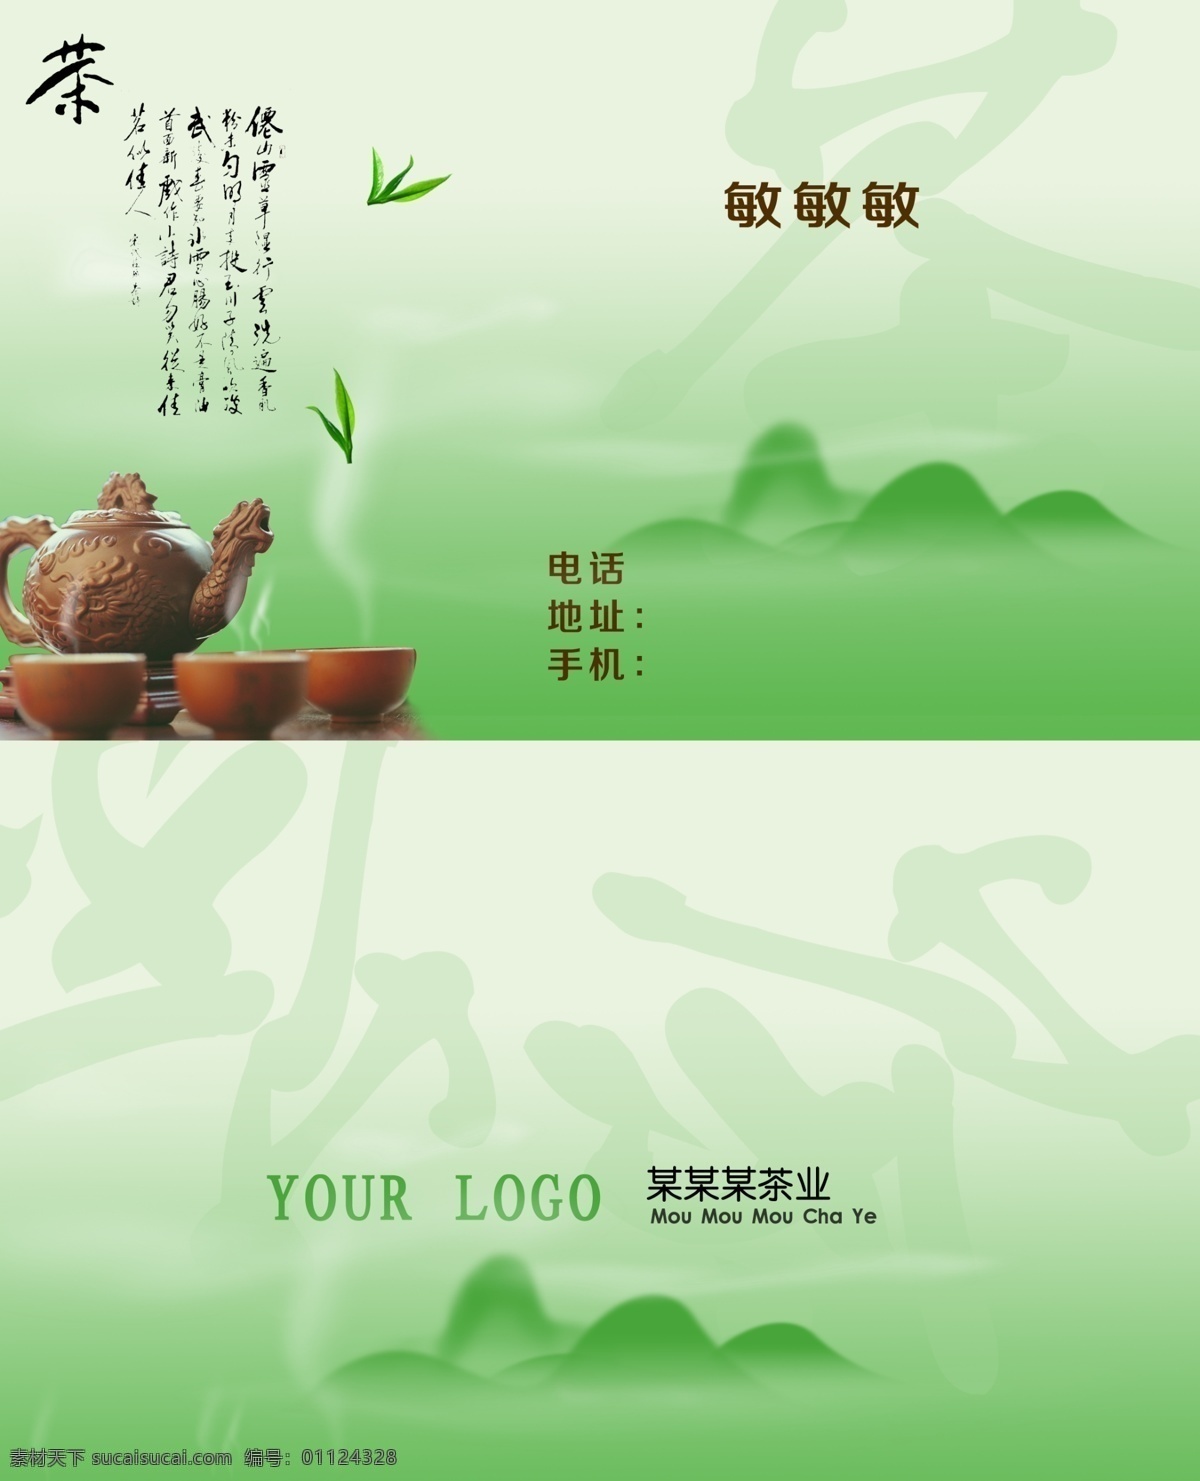 茶叶名片 模版下载 茶名片 茶叶 名片 大红袍 名片卡片 广告设计模板 源文件